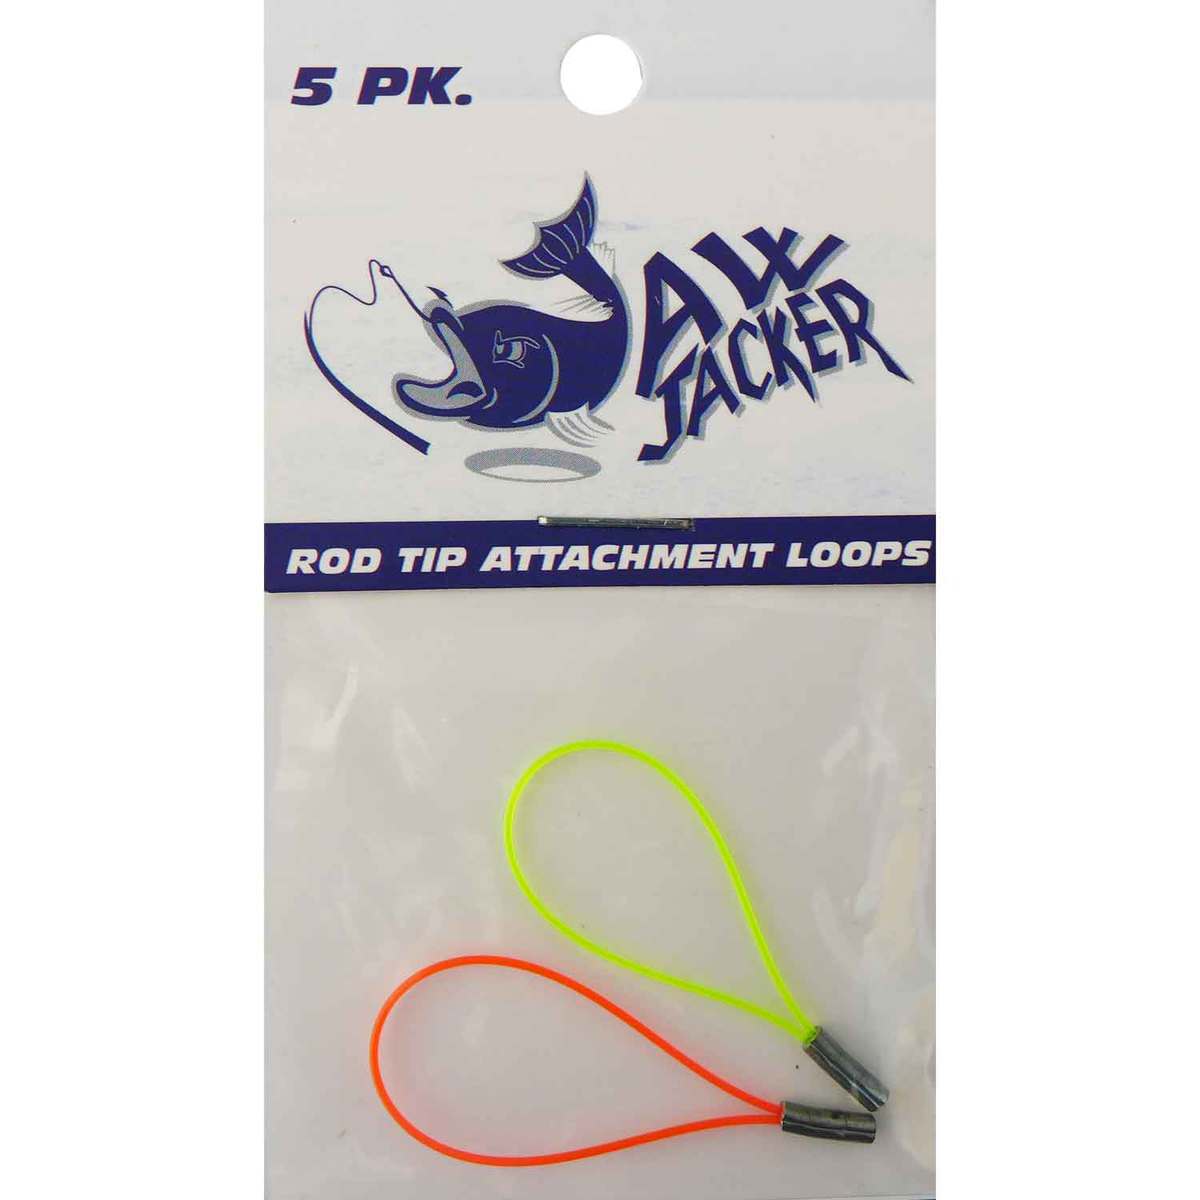 https://www.sportsmans.com/medias/jawjacker-rod-tip-attachment-loops-ice-fishing-tip-up-accessory-1504992-1.jpg?context=bWFzdGVyfGltYWdlc3w1NDQ4MnxpbWFnZS9qcGVnfGFXMWhaMlZ6TDJnd015OW9NbVl2T1RjeU1URTRPRGMwTlRJME5pNXFjR2N8NWM5MzJhNWMxNDE5MWNjOTUzYmFjM2QzMjY0Njk1ZTc4YWQ1YzdiNTliOGM2YTBjMzAyYzA1YzI4MzczZjQ1Mg